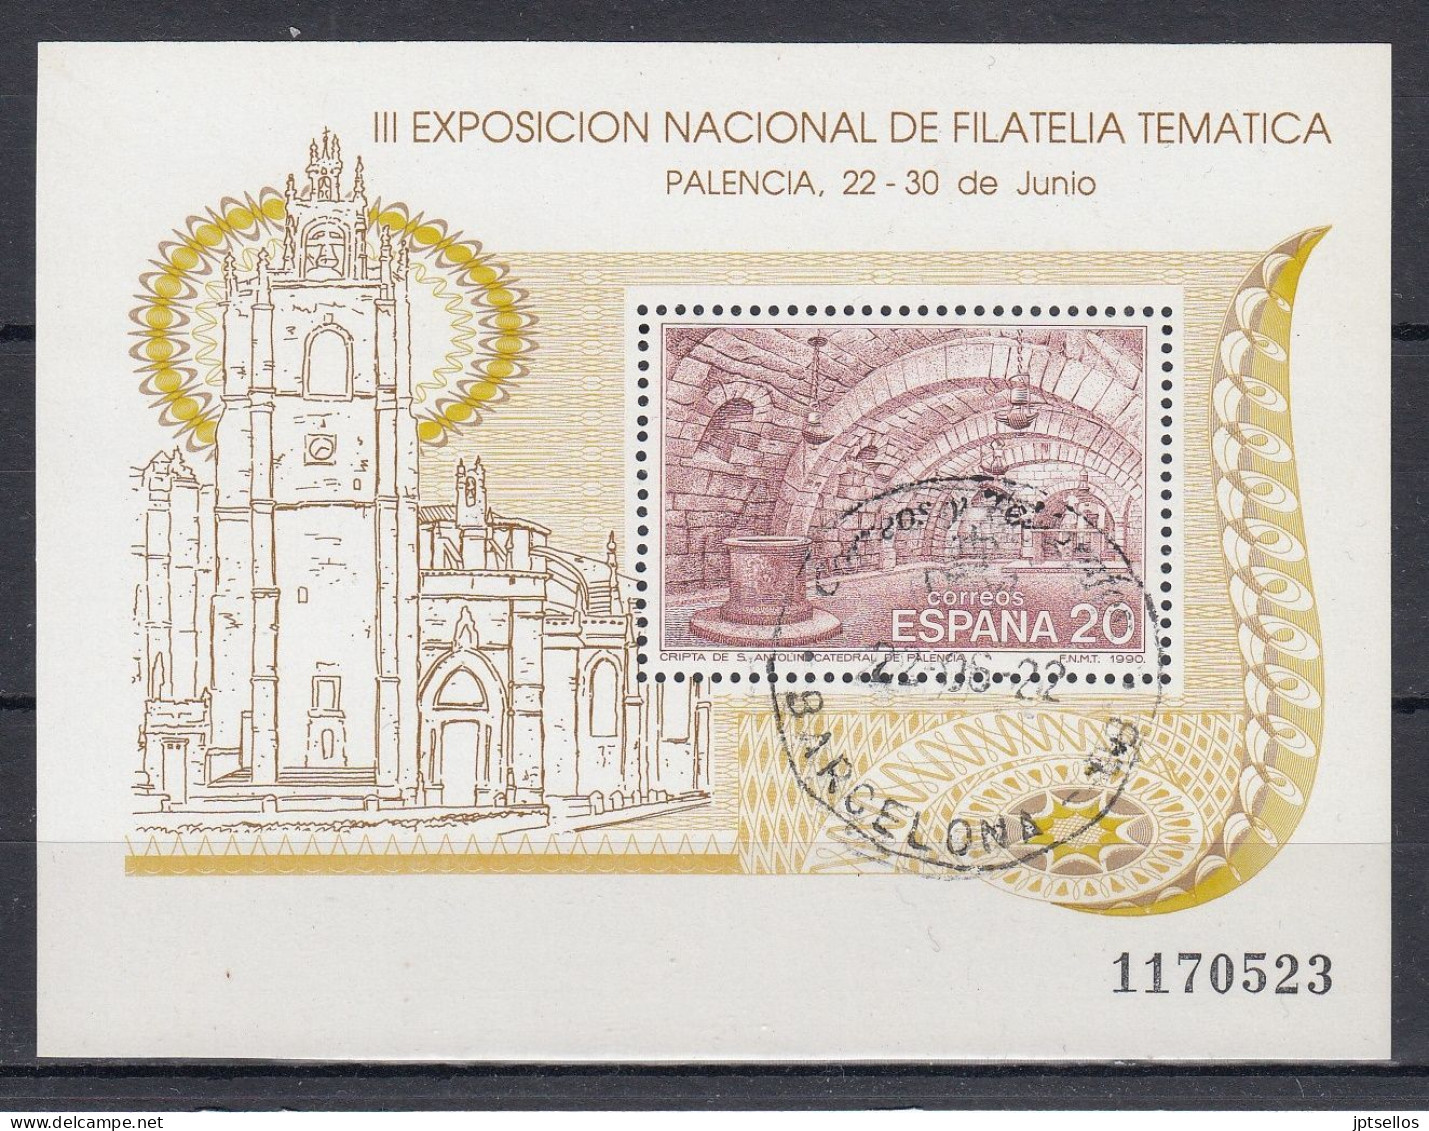 ESPAÑA 1990 Nº HB-3074 USADO - Used Stamps